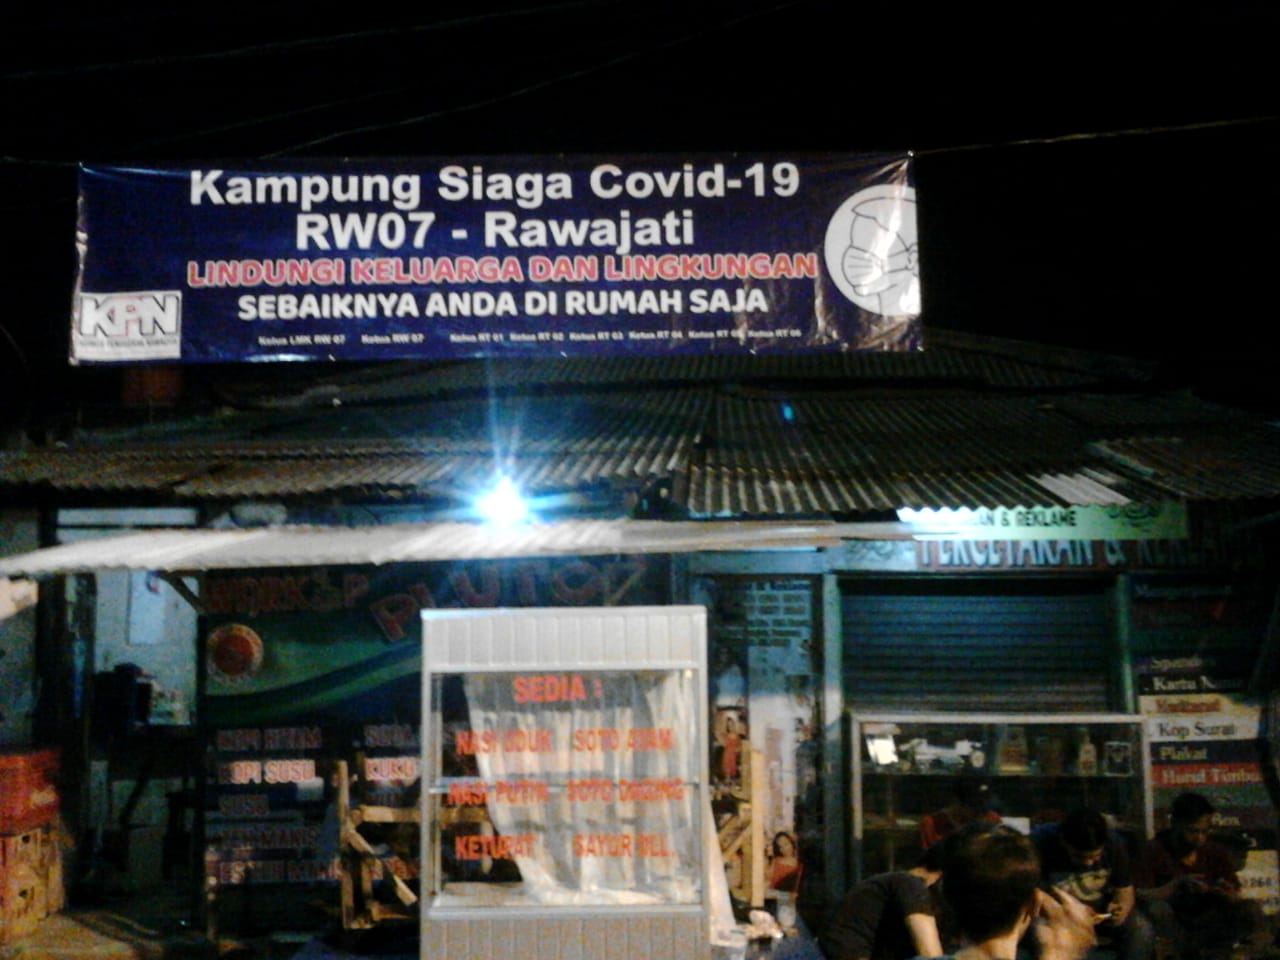 Kampung Siaga COVID-19 Rawajati, KPN Libatkan Peran Warga untuk Putus Mata Rantai Corona - Desapedia